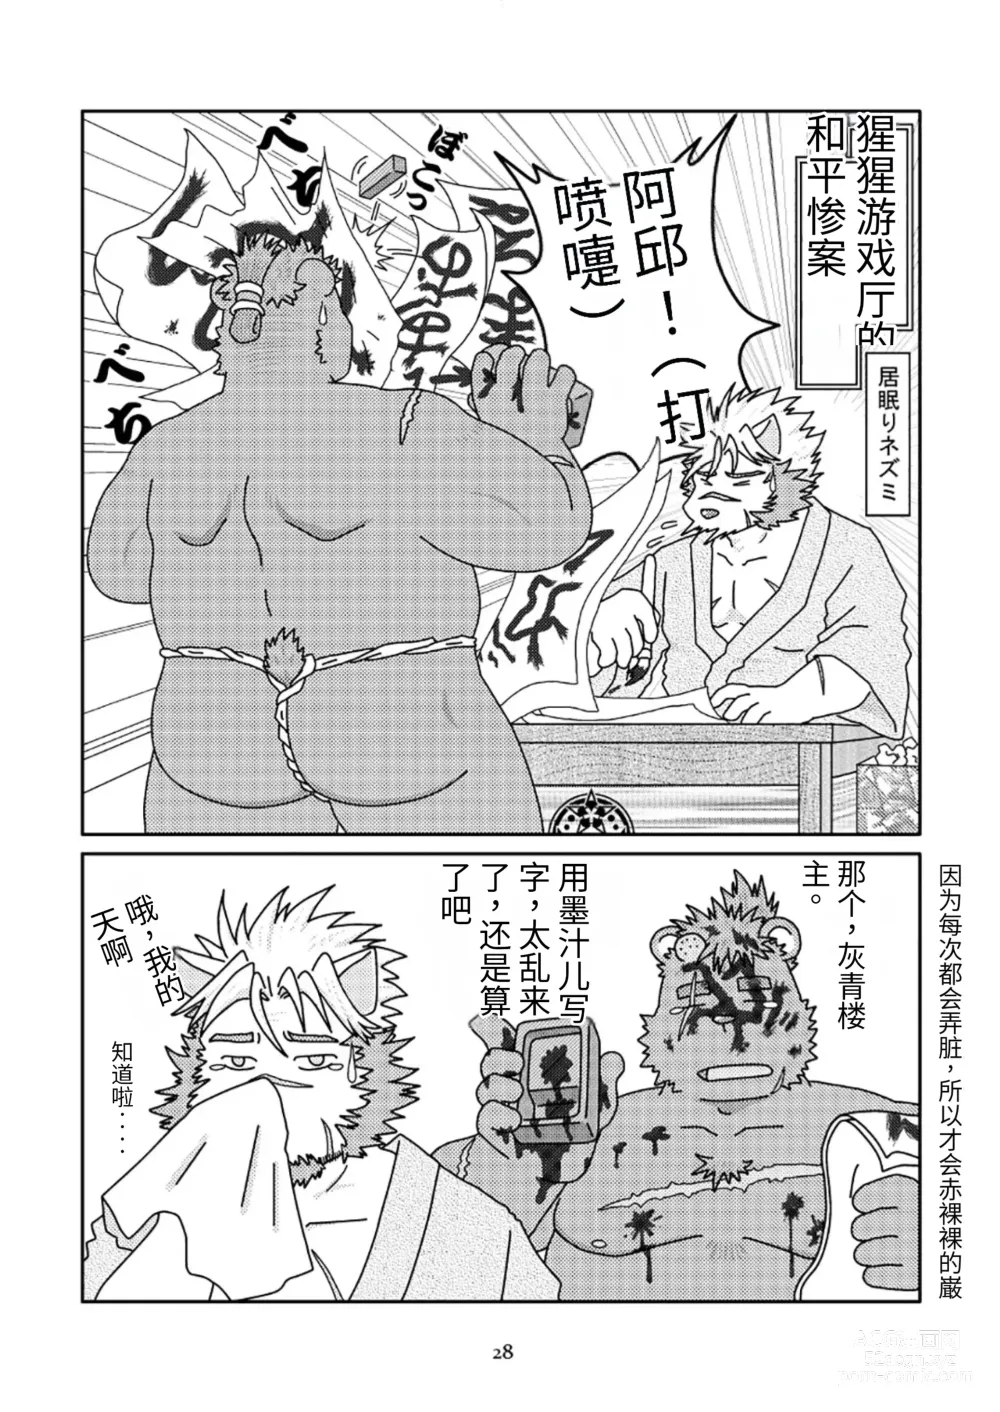 Page 28 of doujinshi 狗津原细见